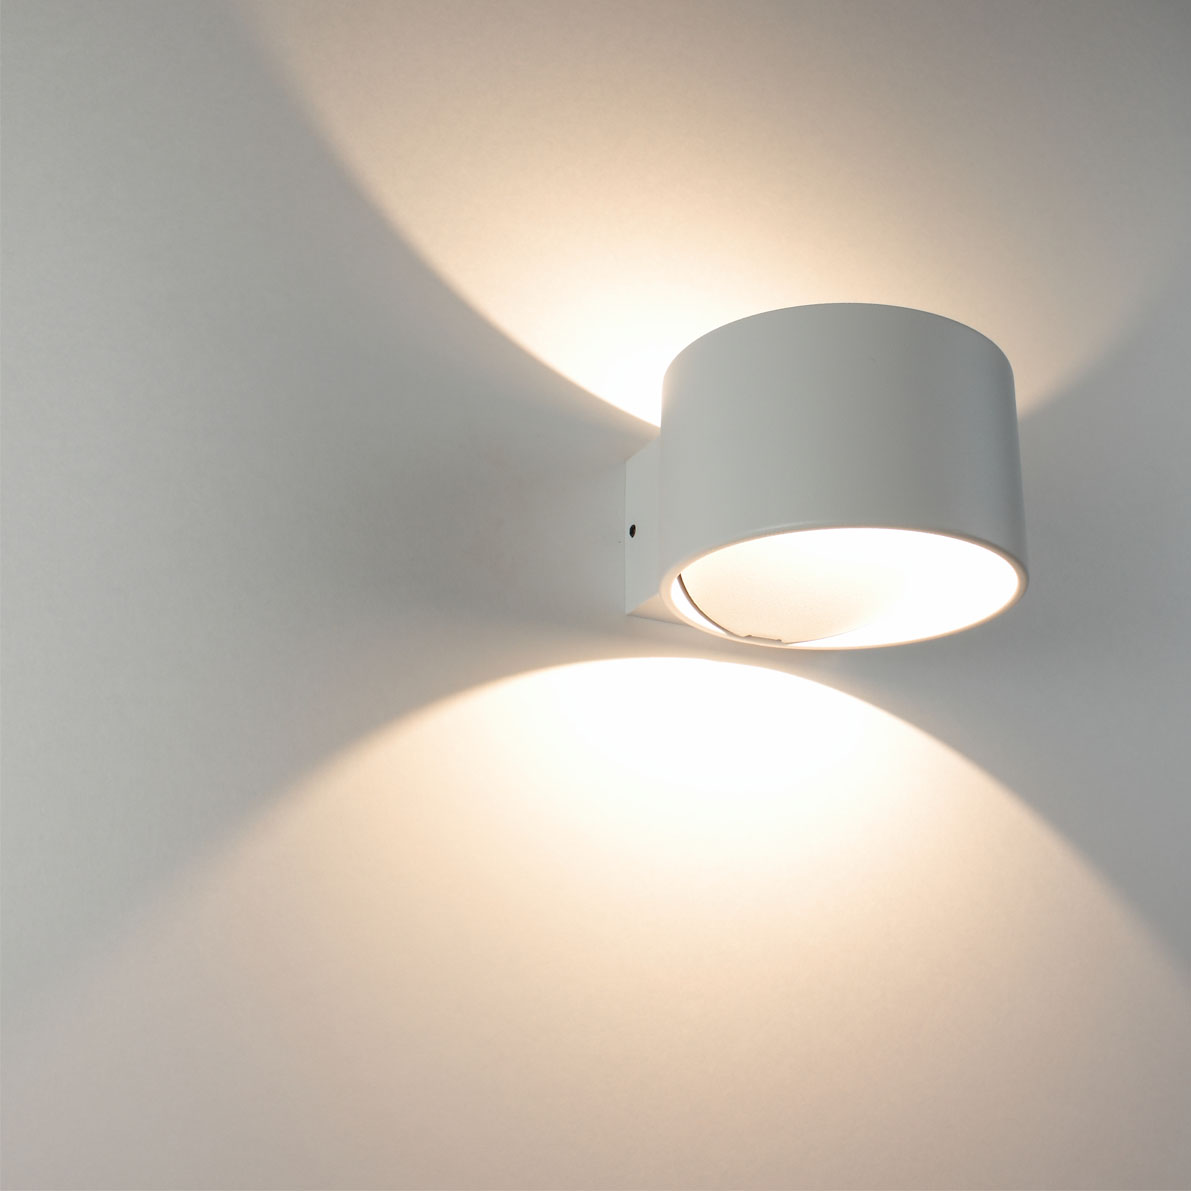 Светодиодные светильники Светильник настенный светодиодный JH-BD-B04 DHL26 (220V, 7W, белый корпус, warm white)